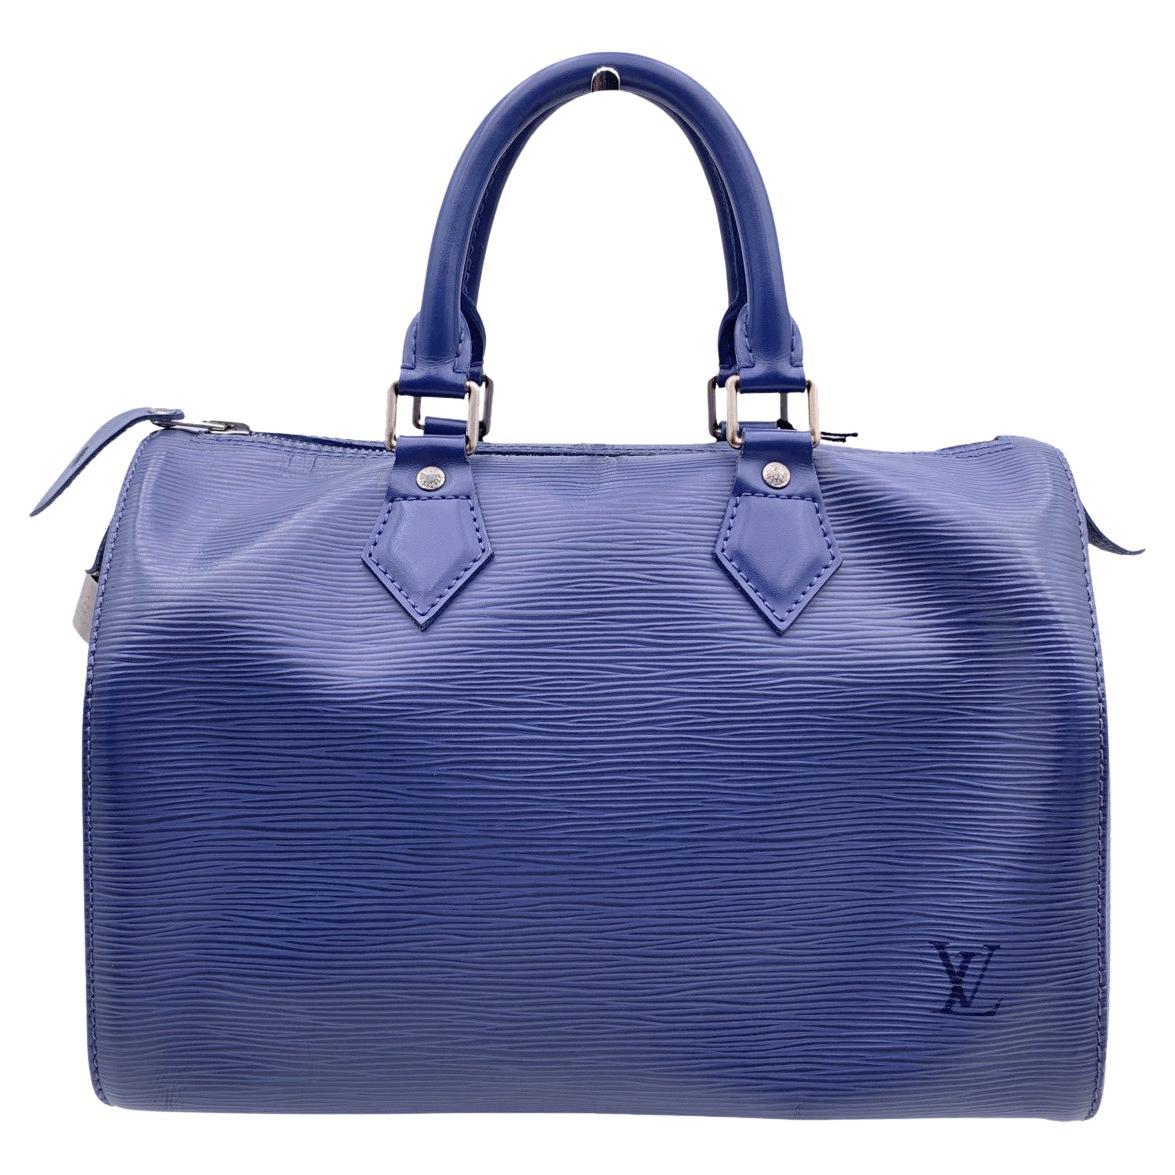 Louis Vuitton Toledo Blue Epi Leather Speedy 25 Boston Bag Handbag